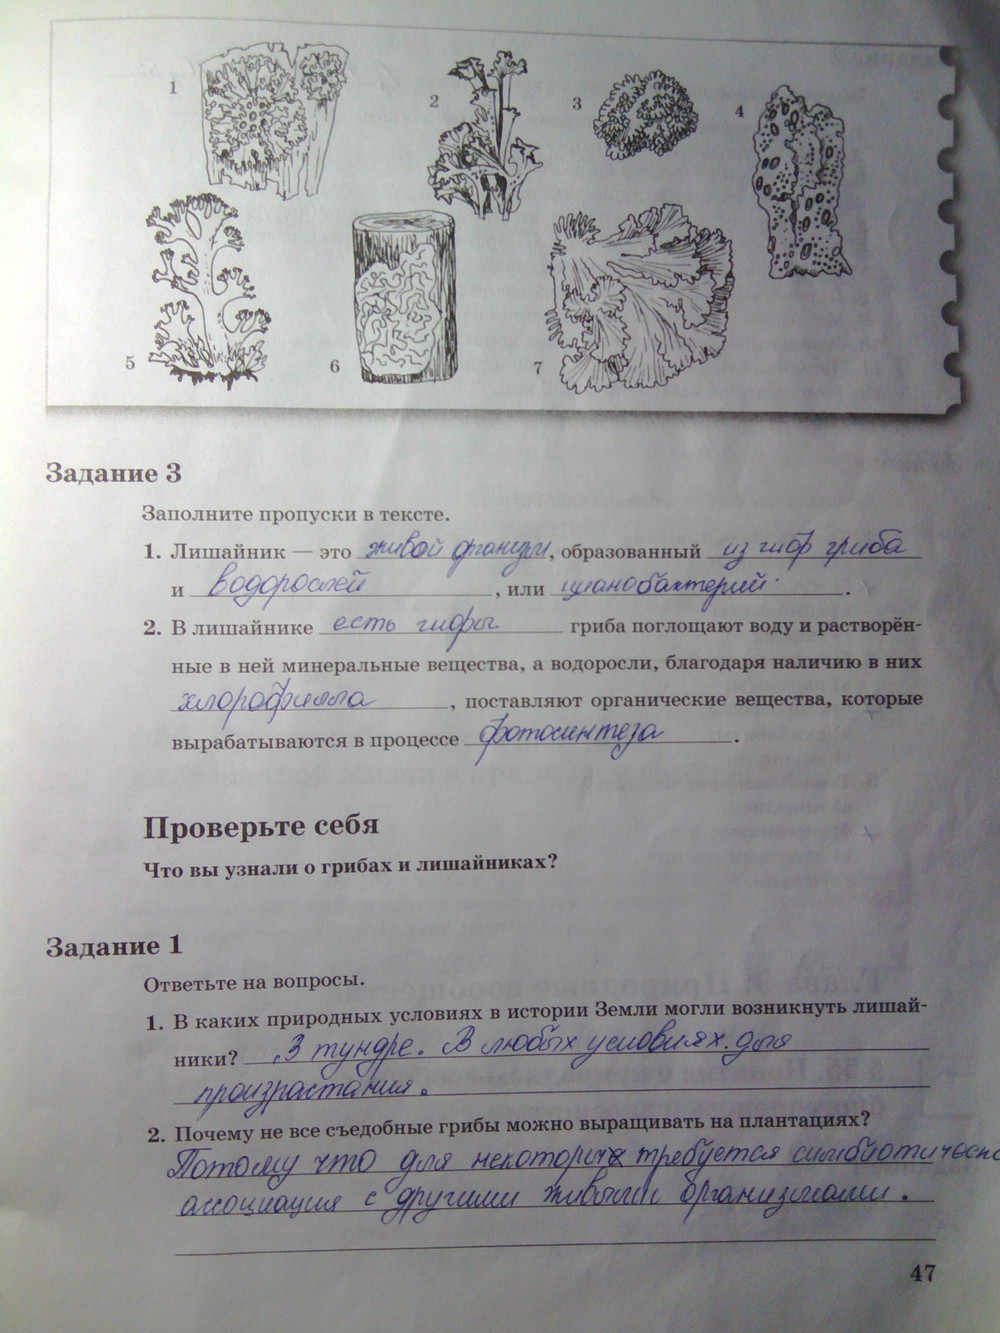 Страница (упражнение) 47 рабочей тетради. Страница 47 ГДЗ рабочая тетрадь по биологии 6 класс Пономарева